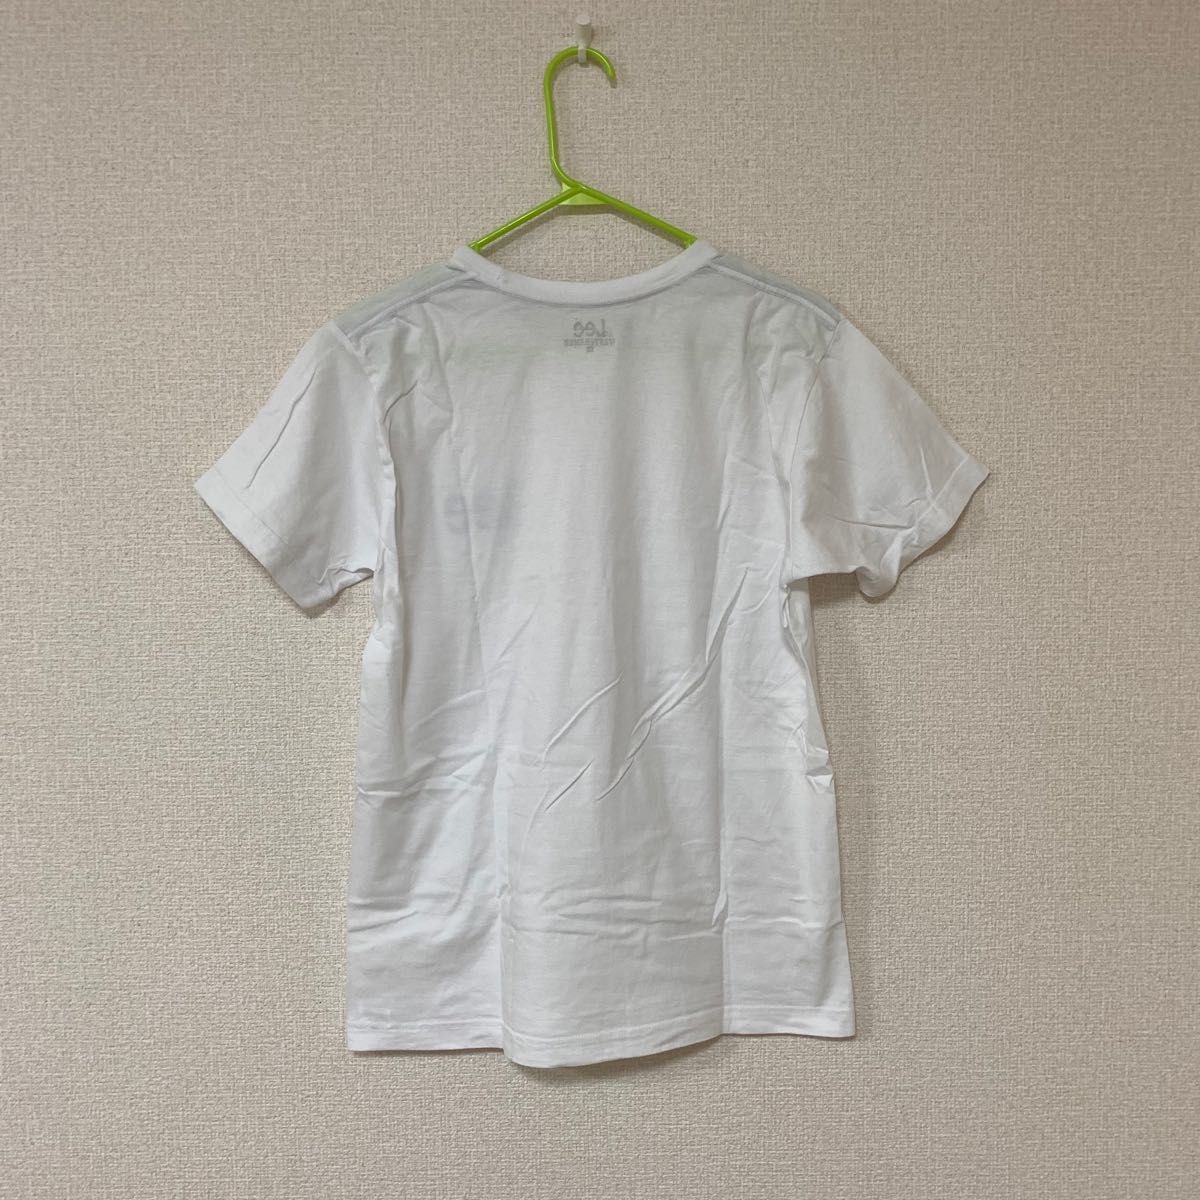 LEE リー 半袖Tシャツ ホワイト Mサイズ ロゴ 綿100% 半袖Tシャツ 白 Tシャツ